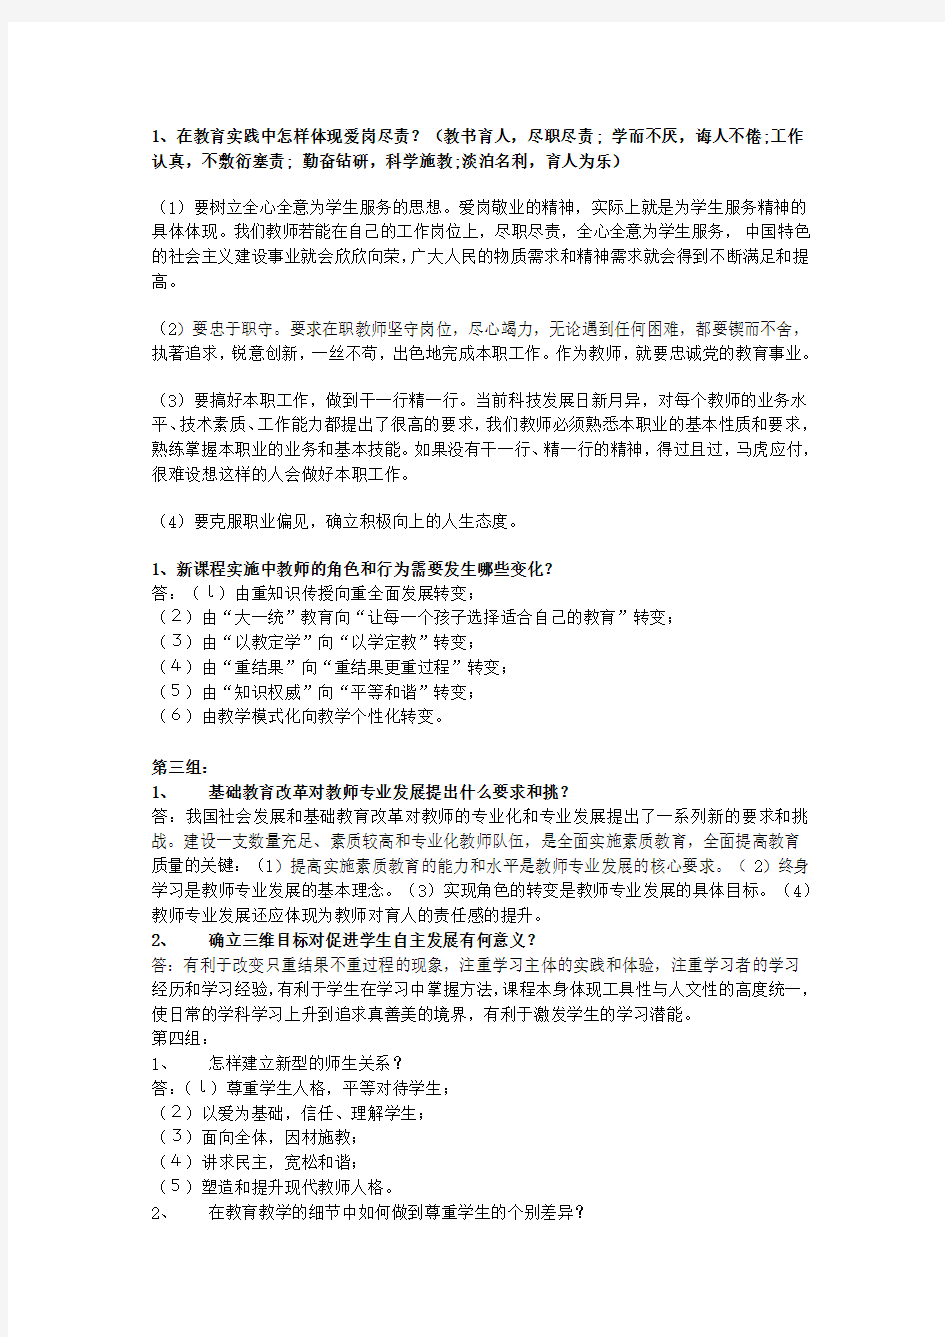 湖北省教师资格考试面试答辩模拟(辅导班内部资料)